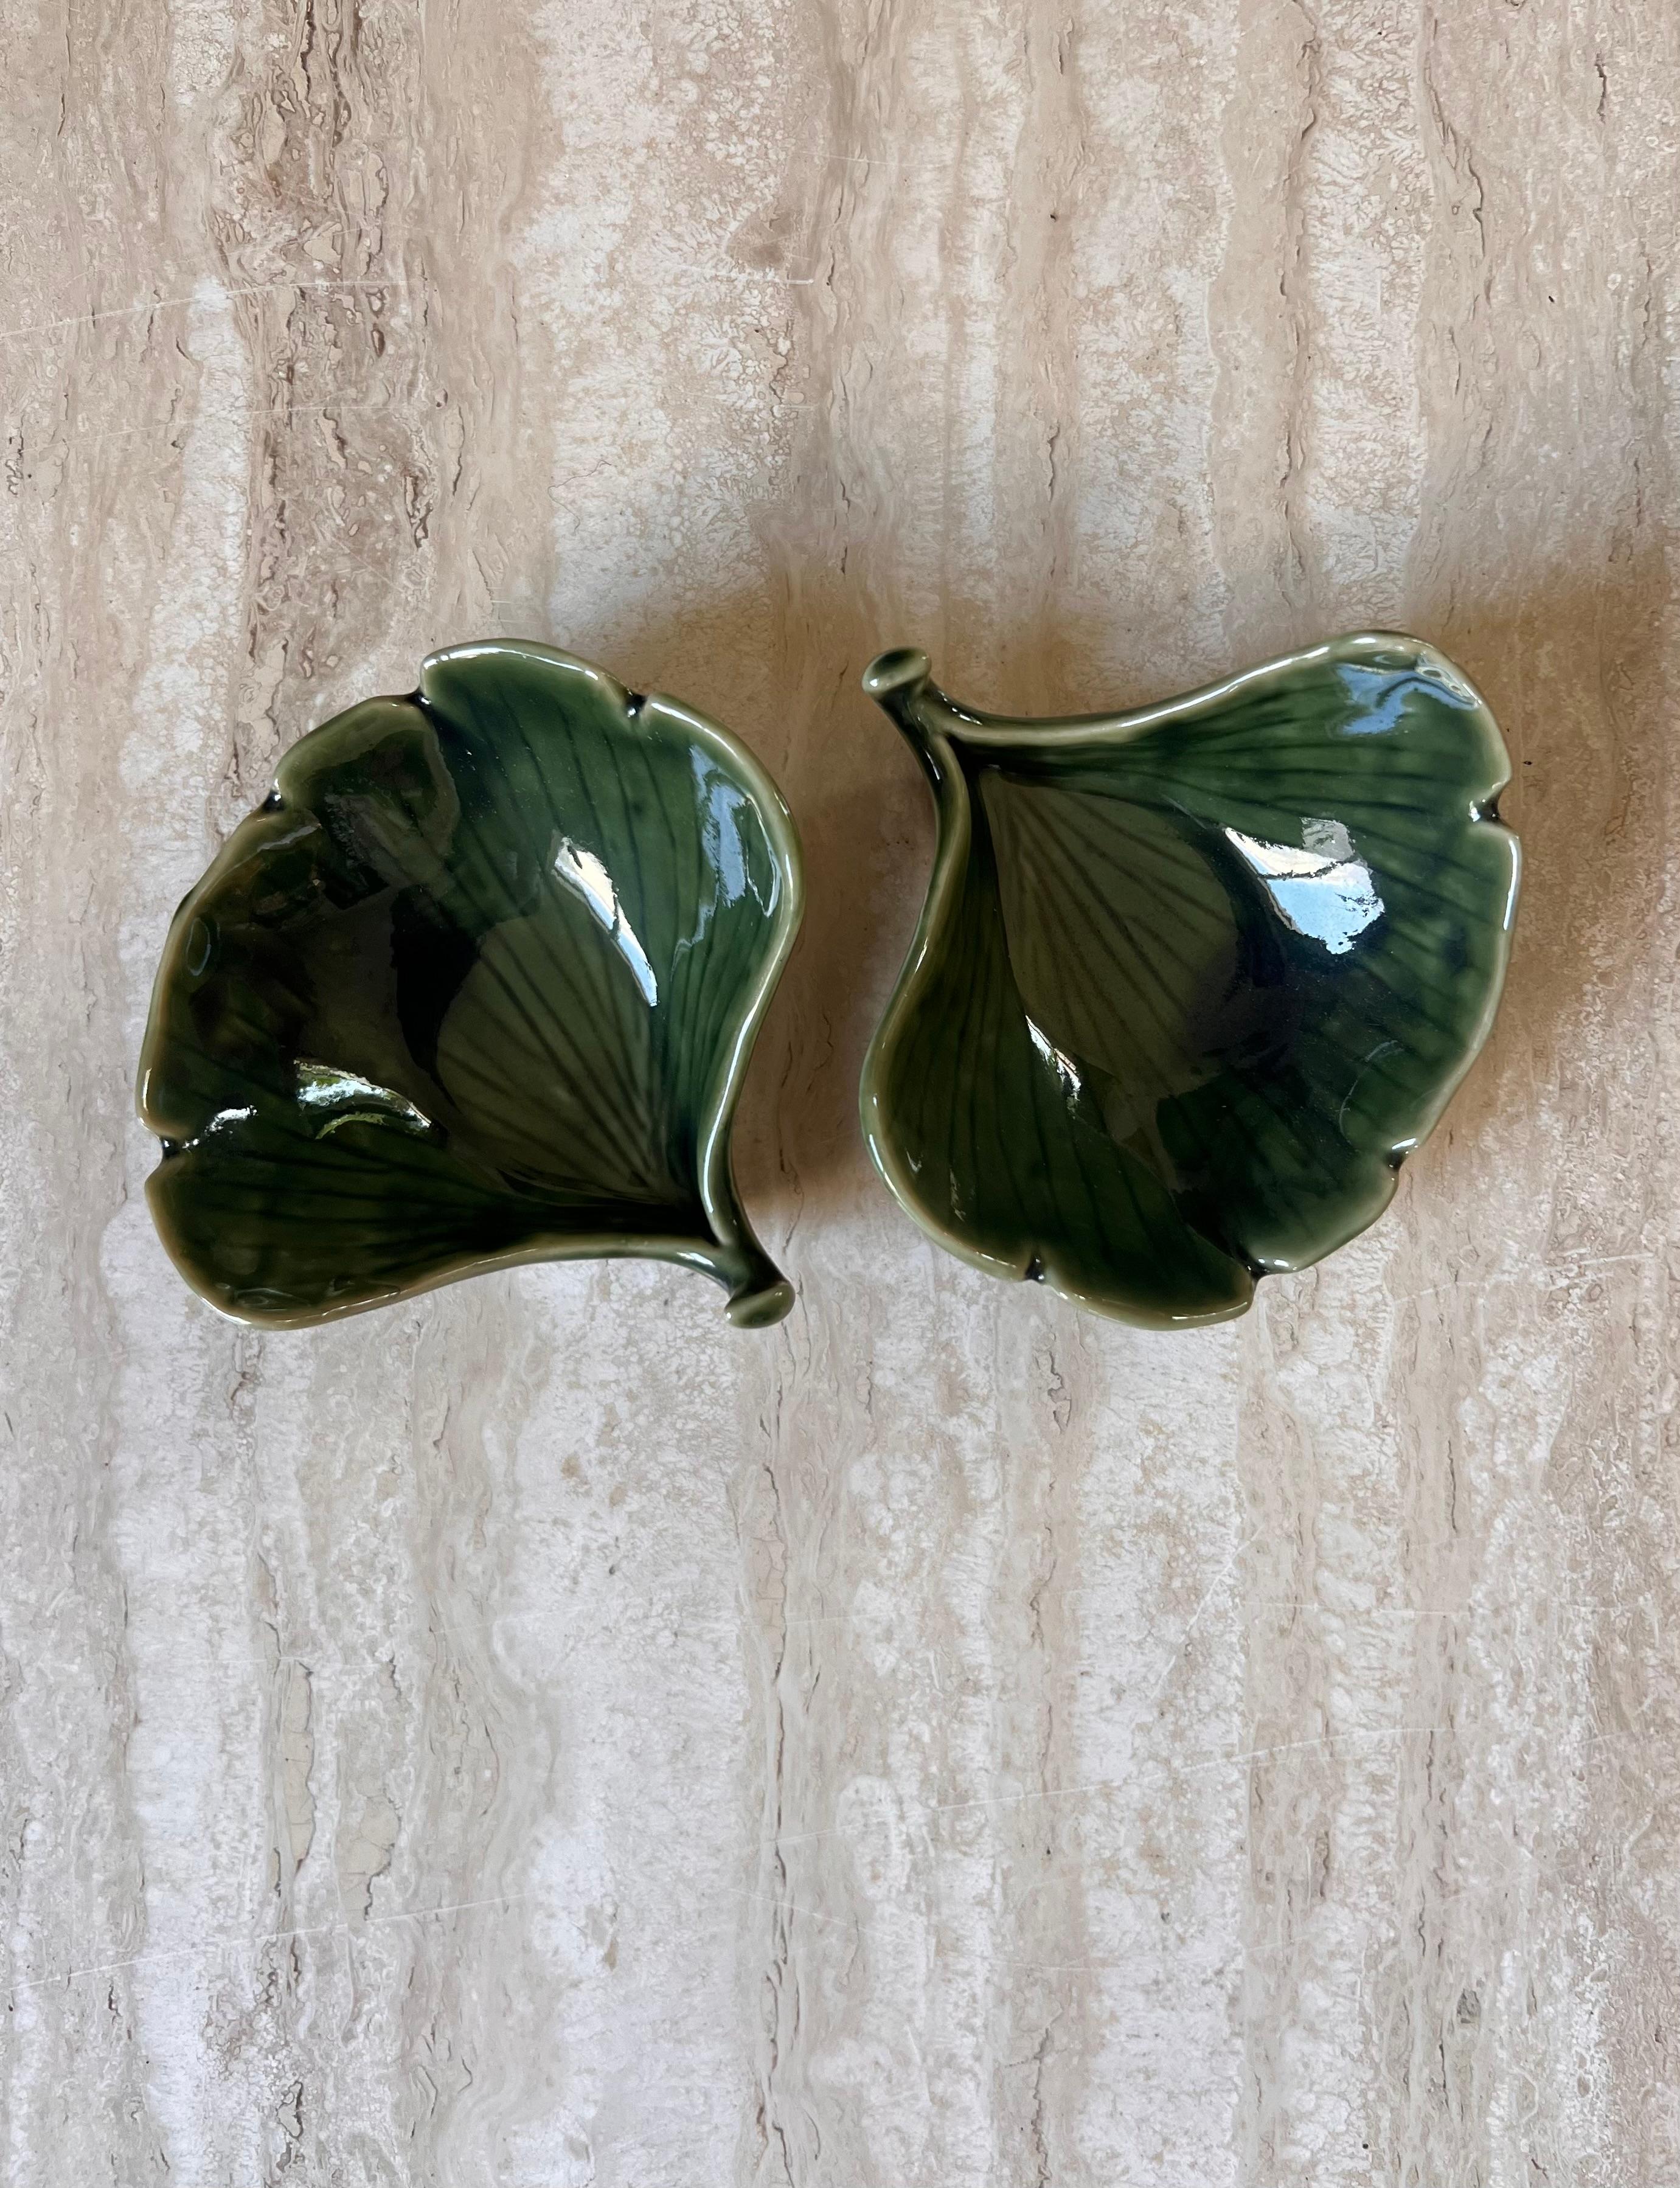 Ein Paar kleine japanische Vintage-Keramik-Blattschalen, 20. Jahrhundert. Für Sojasauce und Wasabi, vielleicht auch für Oliven oder Nüsse bei einem größeren Brotaufstrich. Auf späteren Bildern mit längerem japanischem Blattgeschirr abgebildet, auch